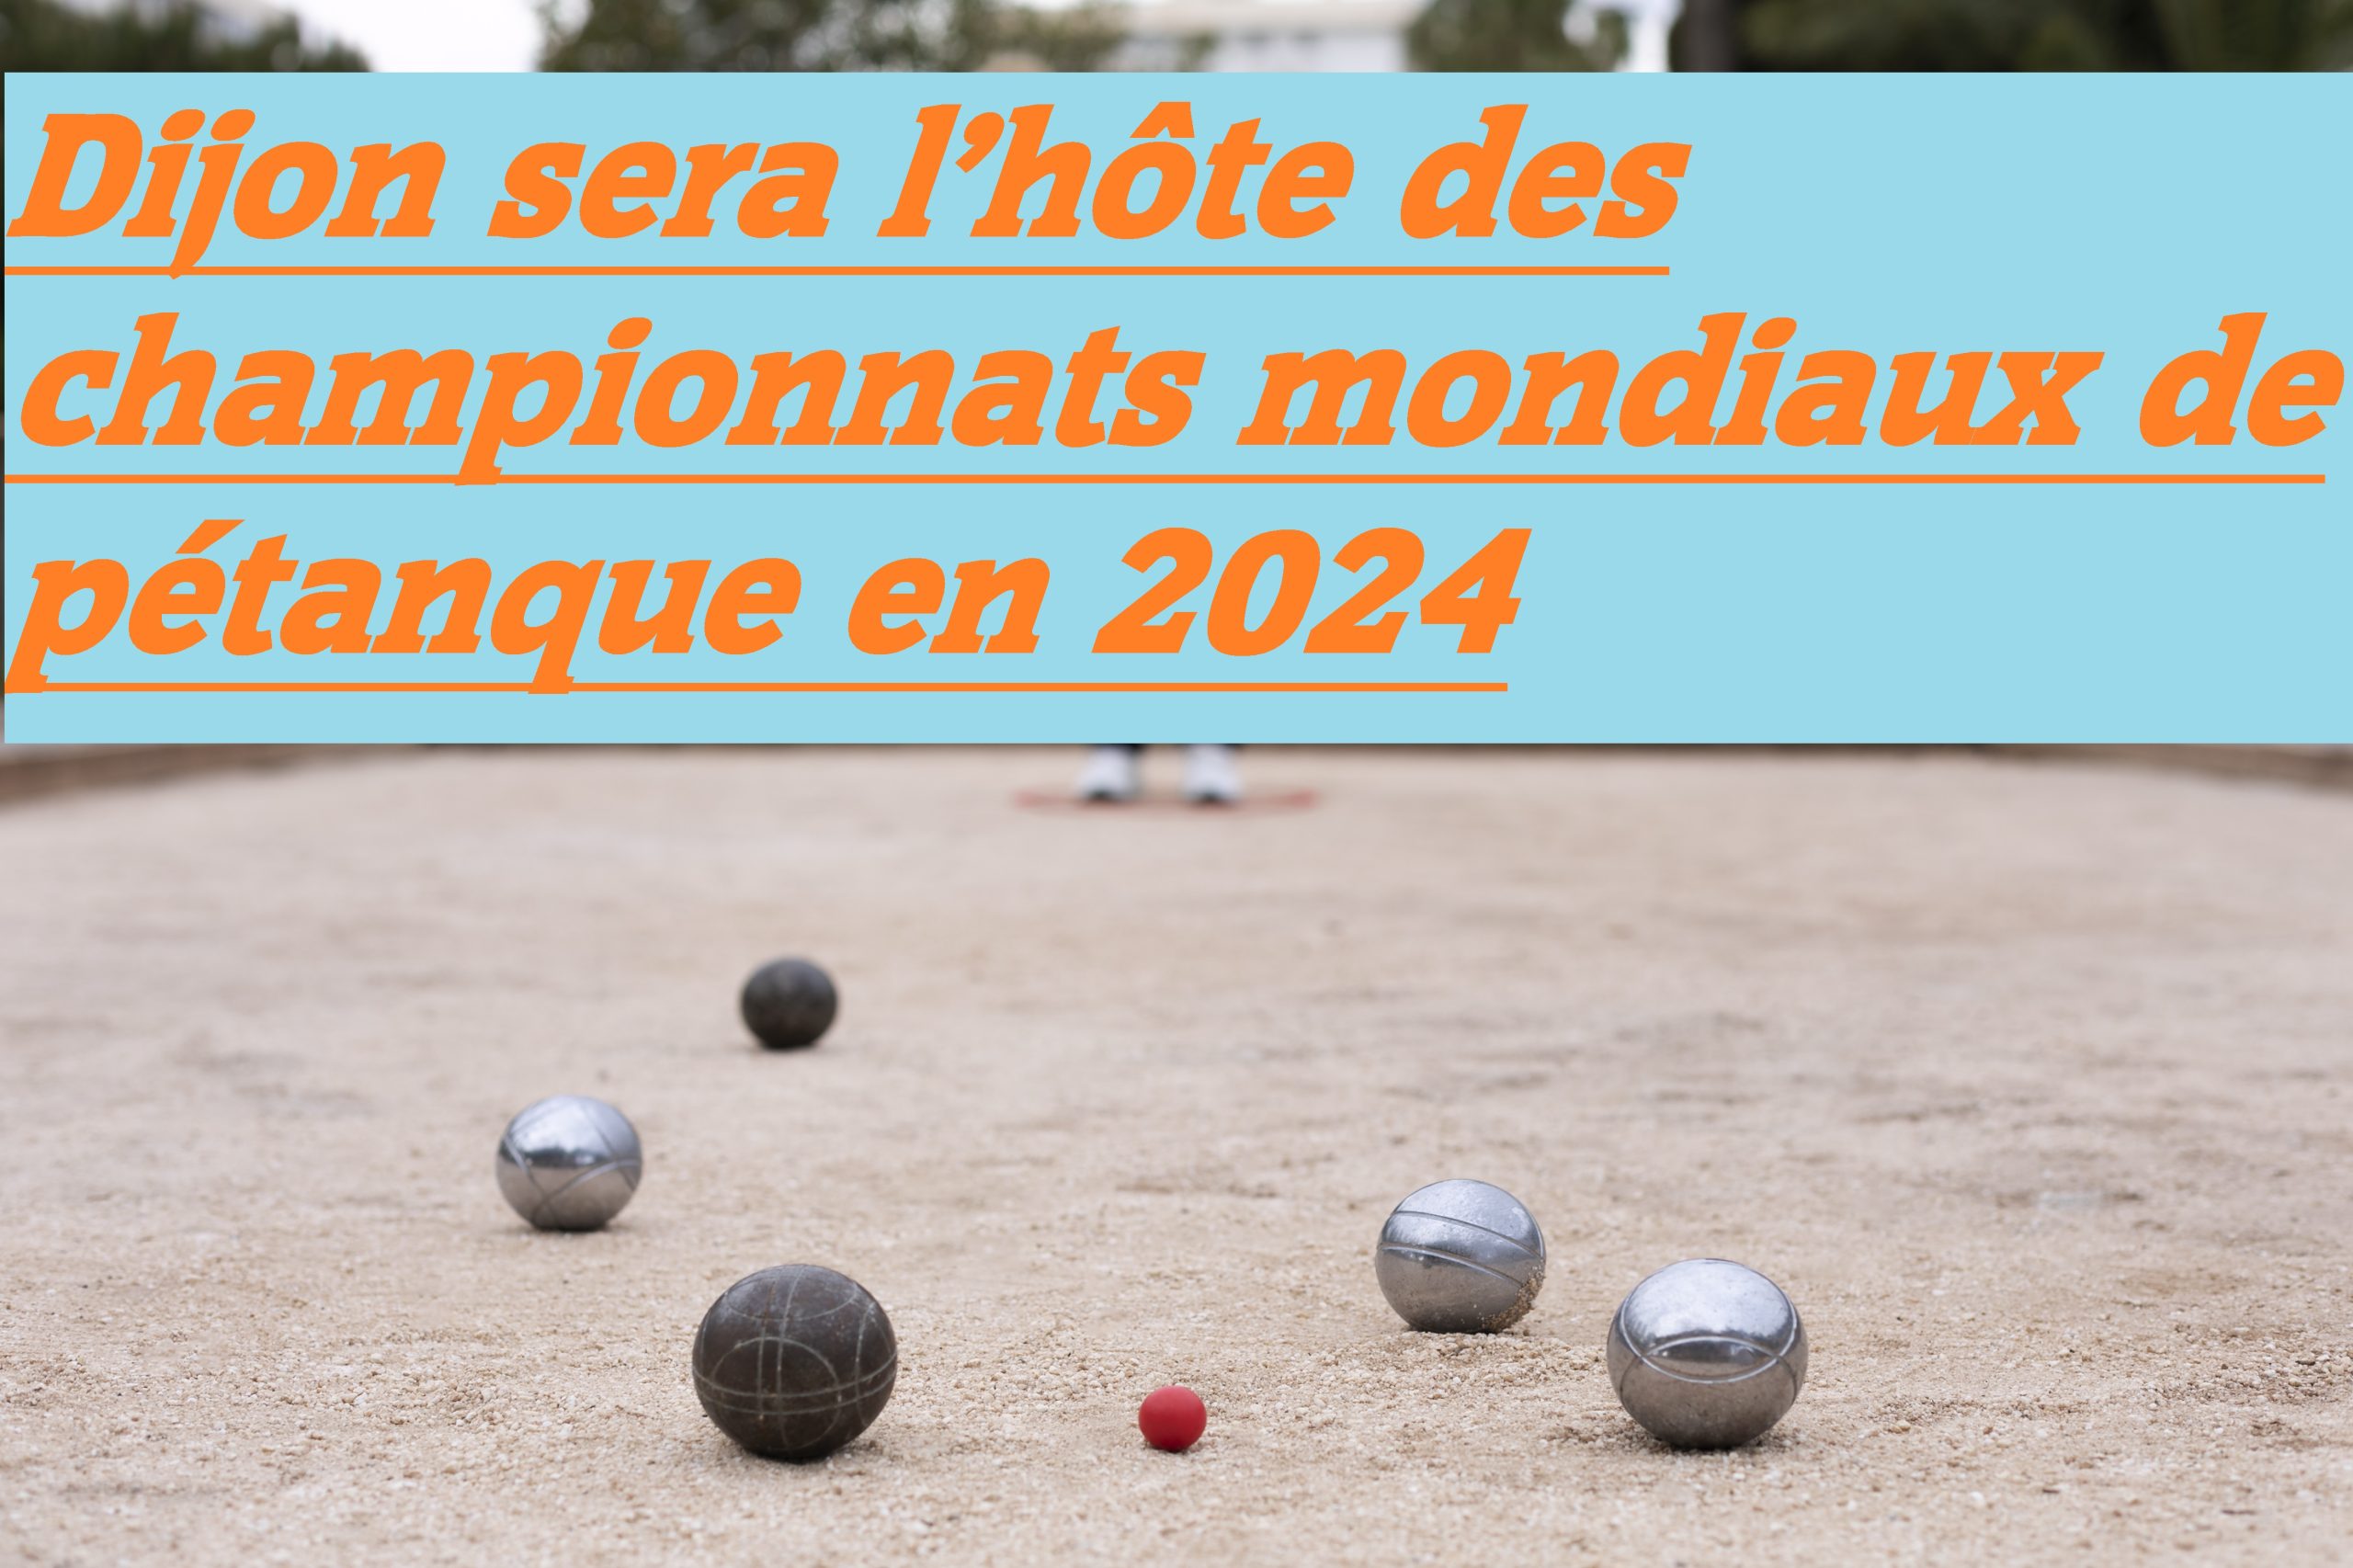 Lire la suite à propos de l’article Les Championnats mondiaux de pétanque en 2024 à Dijon